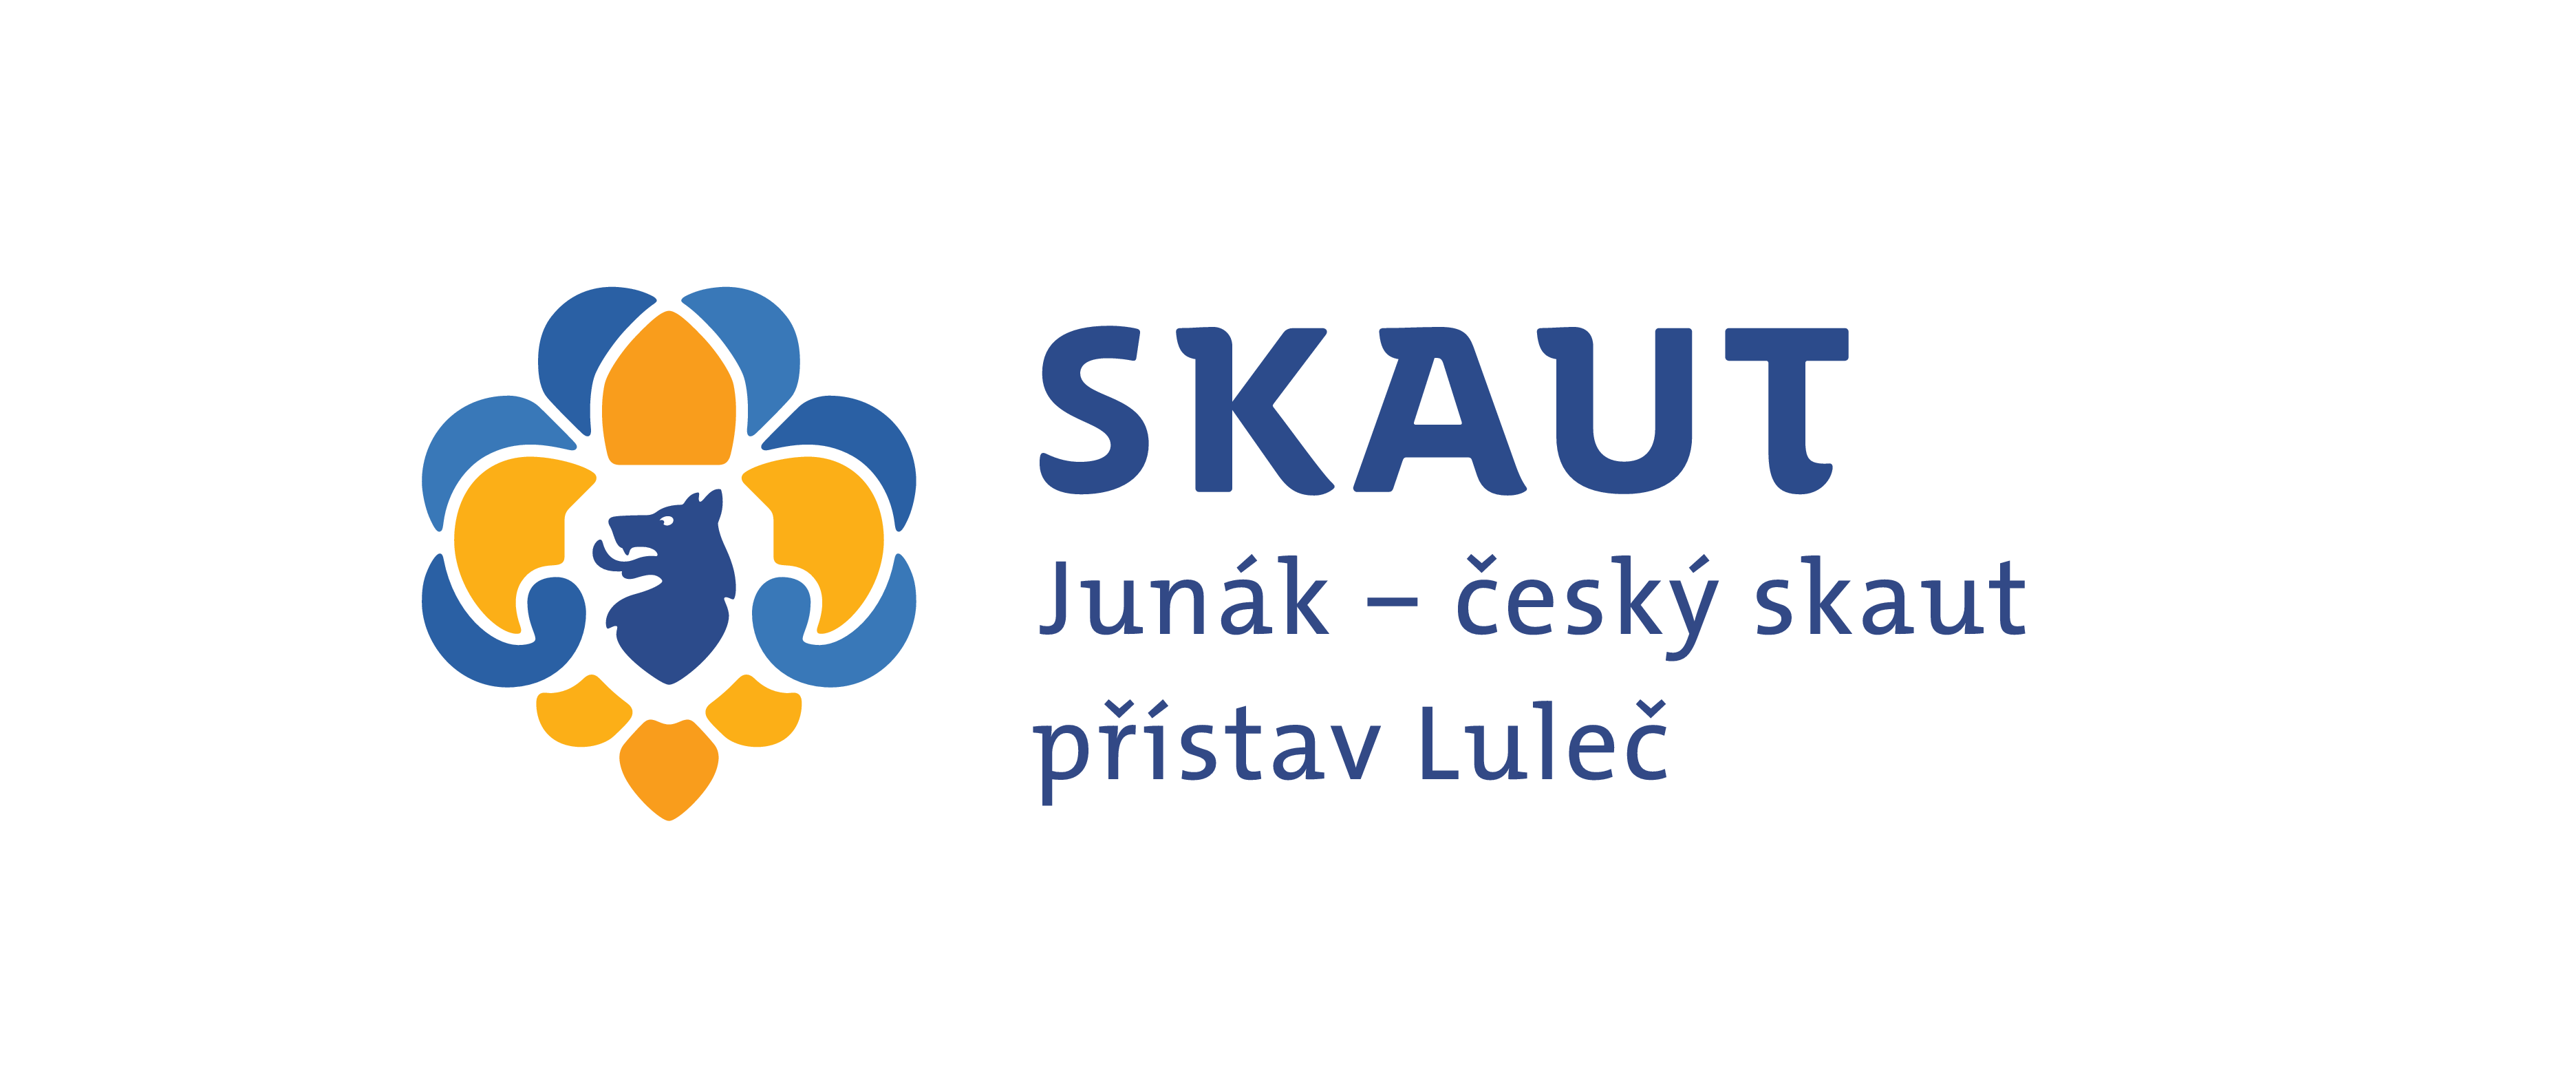 Junák – český skaut, přístav Luleč